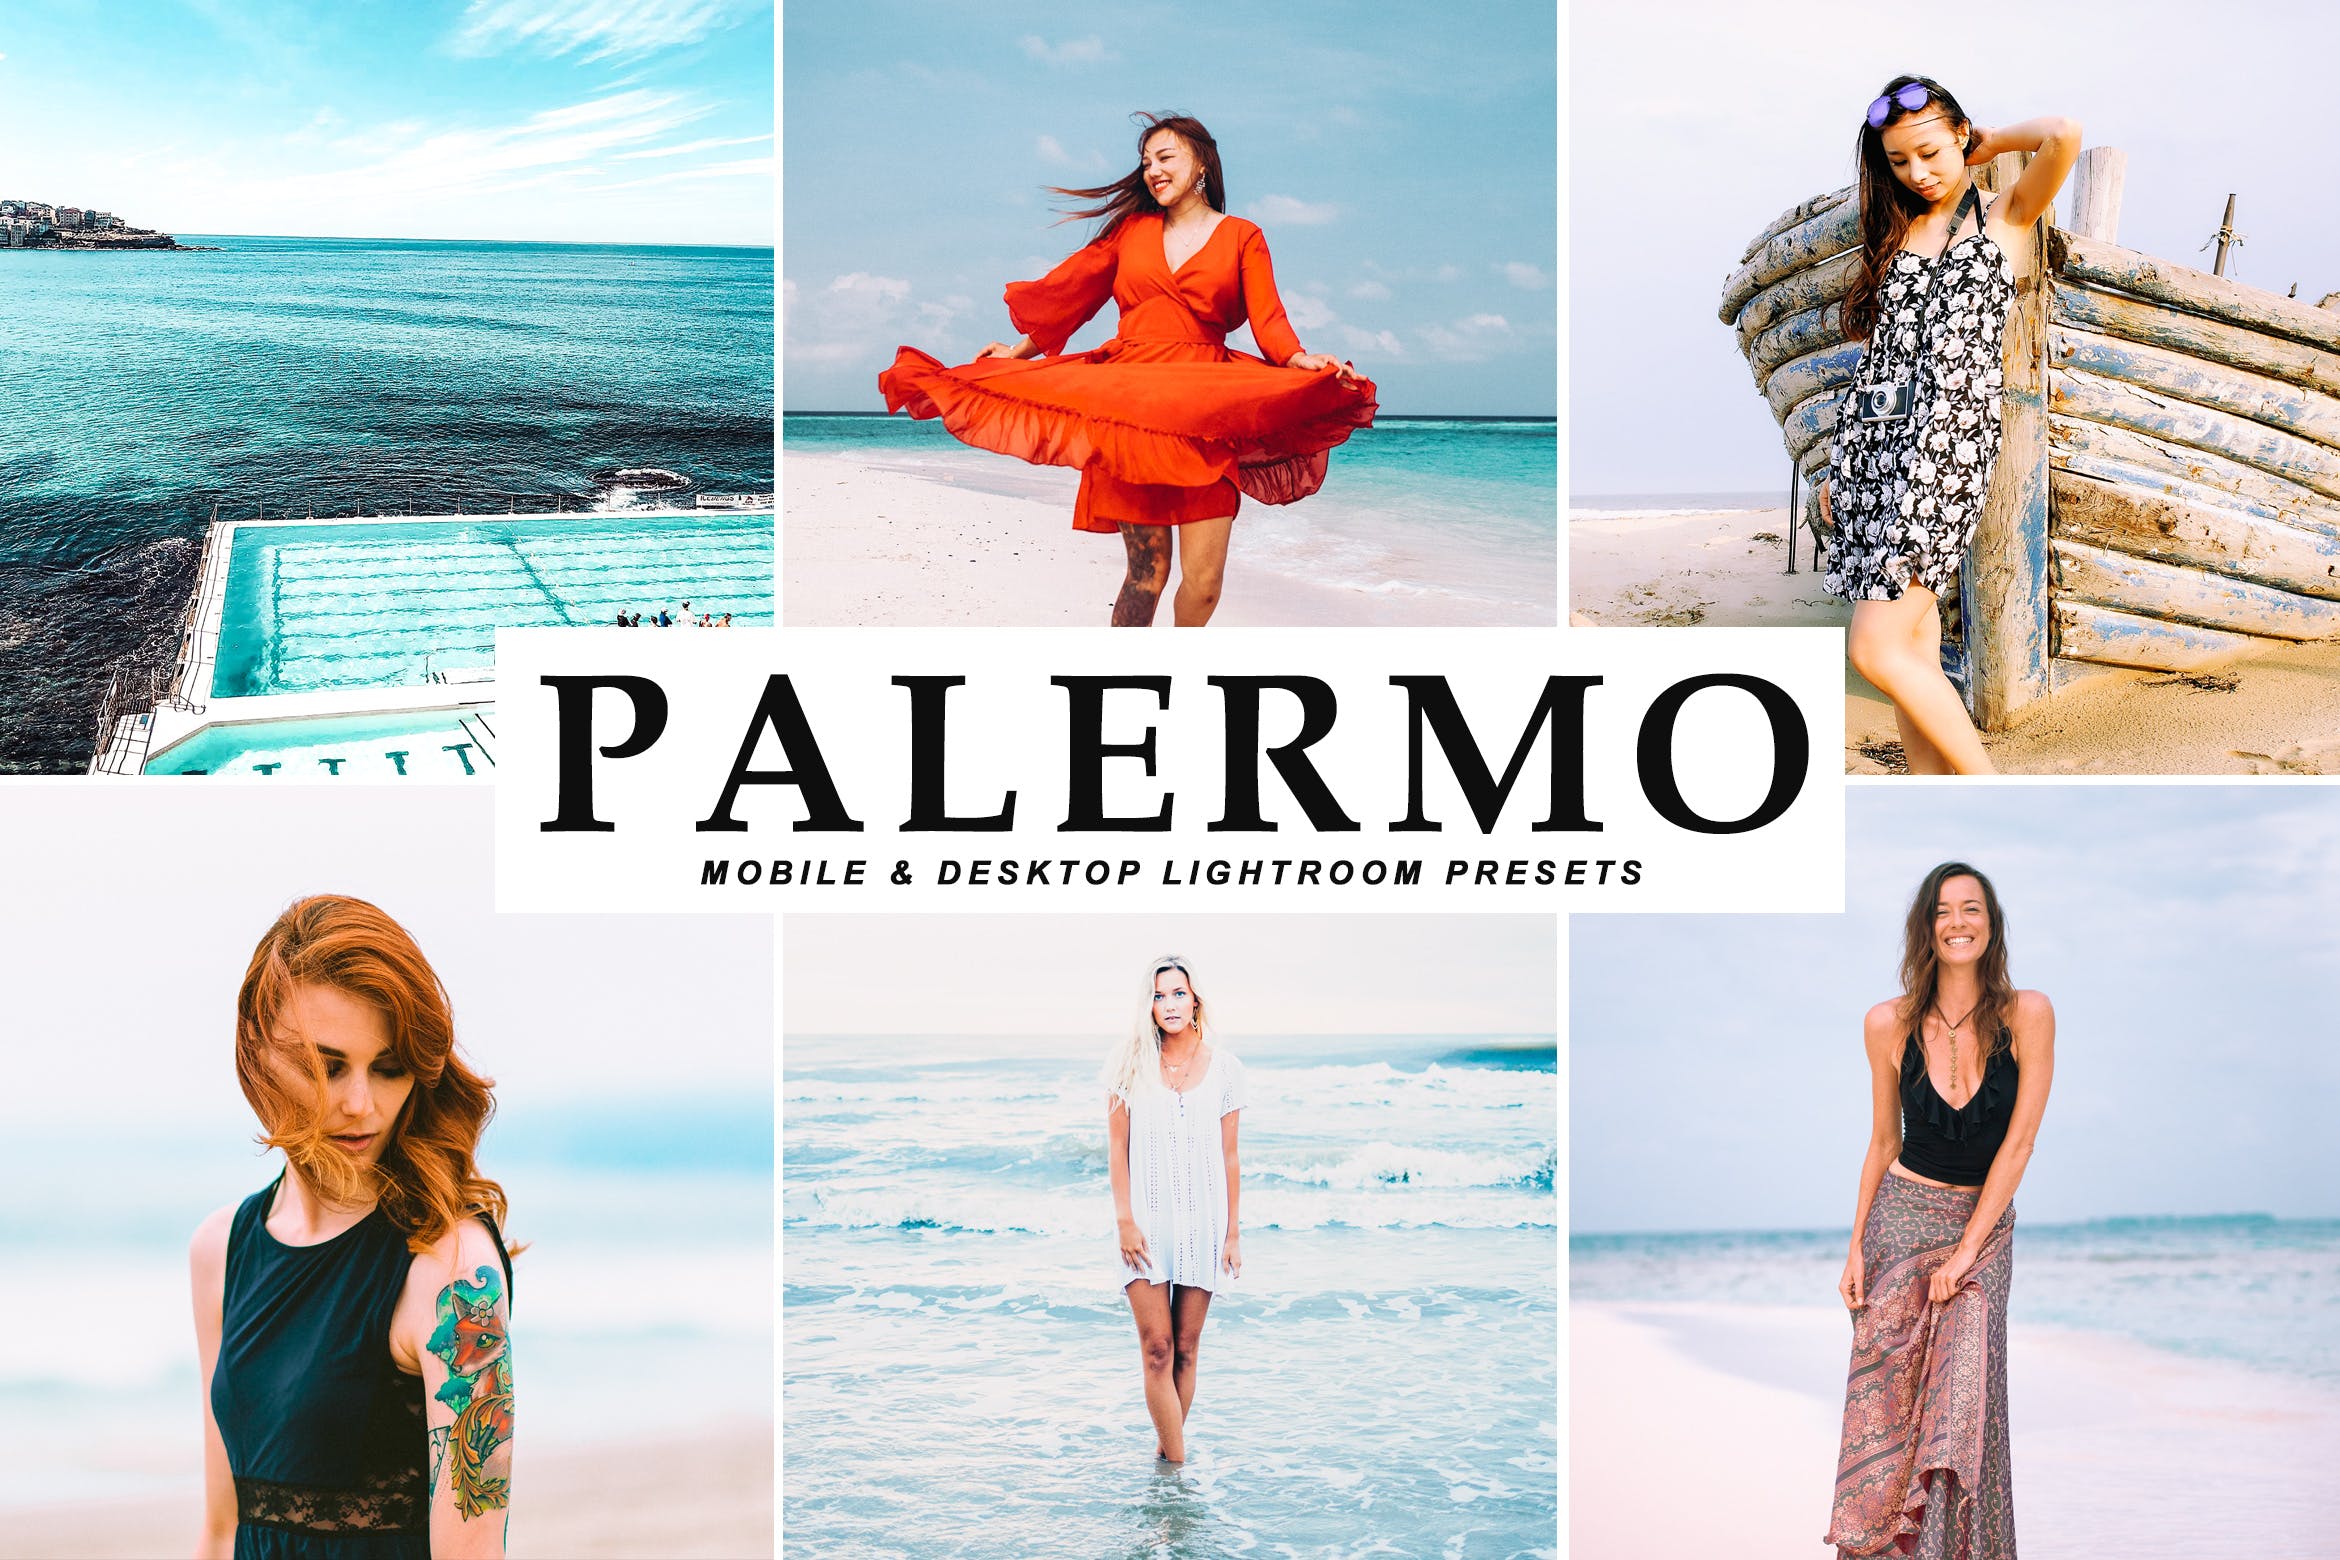 沙滩海岛阳光照片调色滤镜非凡图库精选LR预设 Palermo Mobile & Desktop Lightroom Presets插图